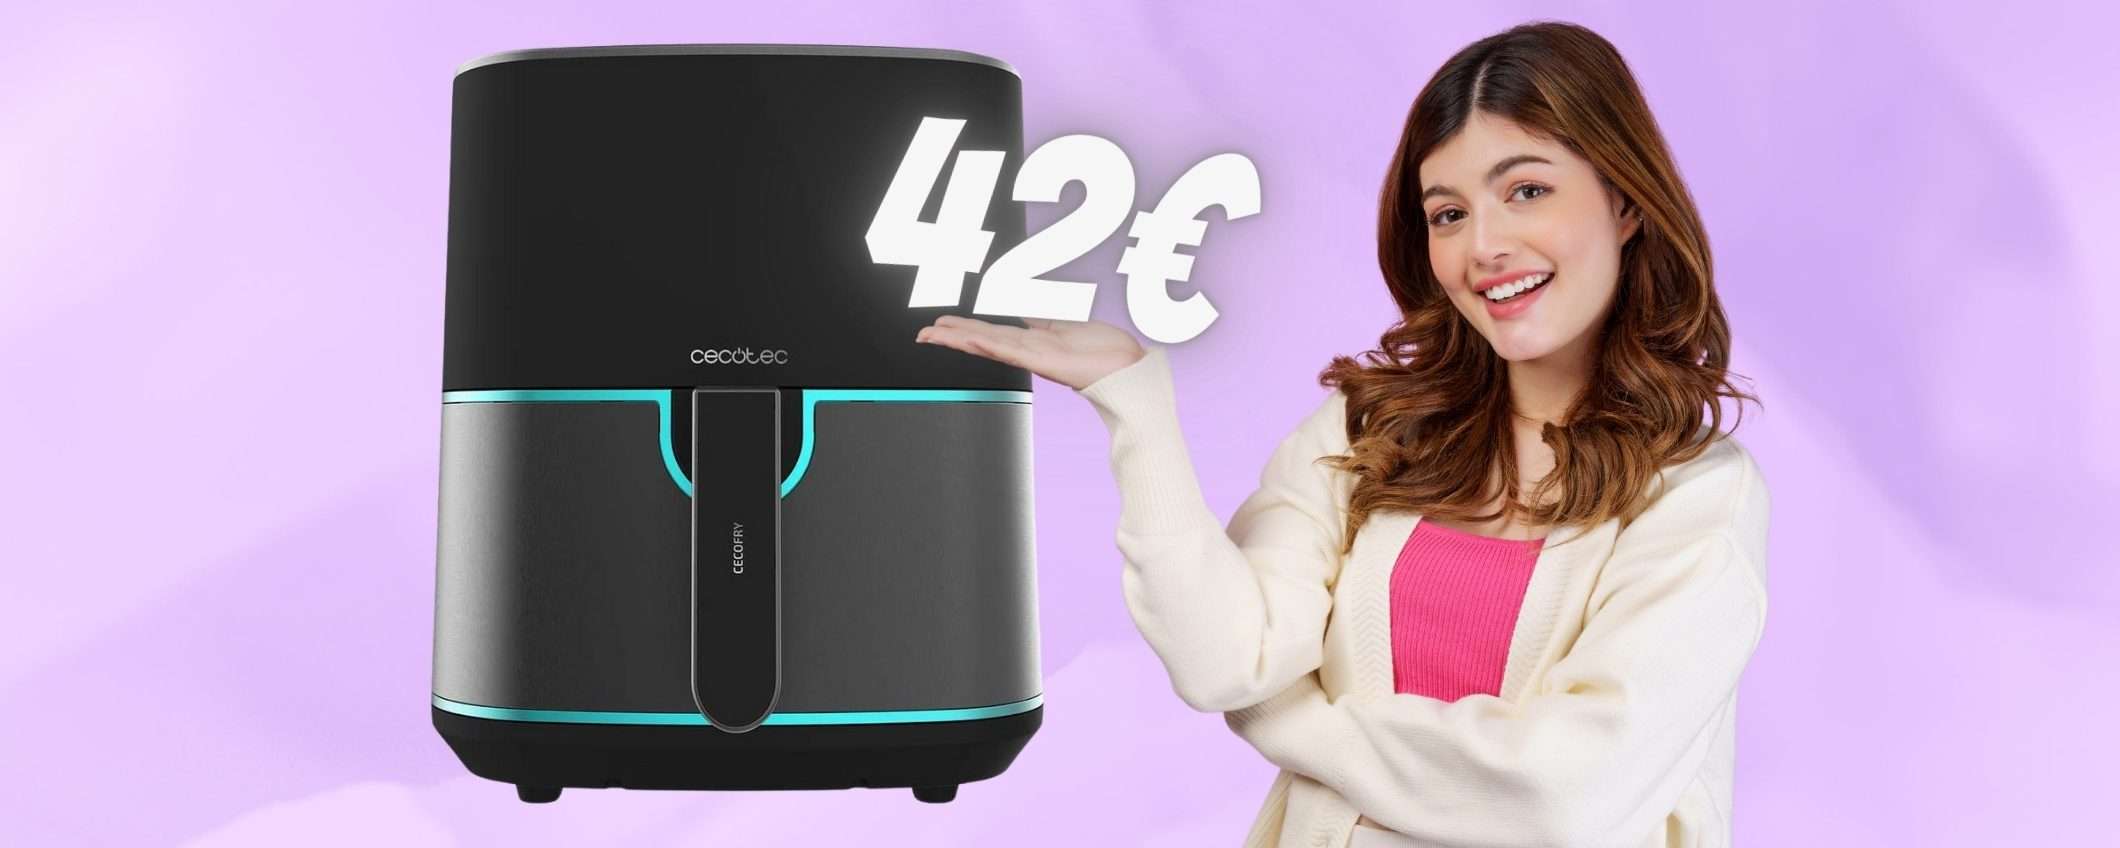 Solo 42€ per questa stupenda friggitrice ad aria da 5,5L (Amazon)